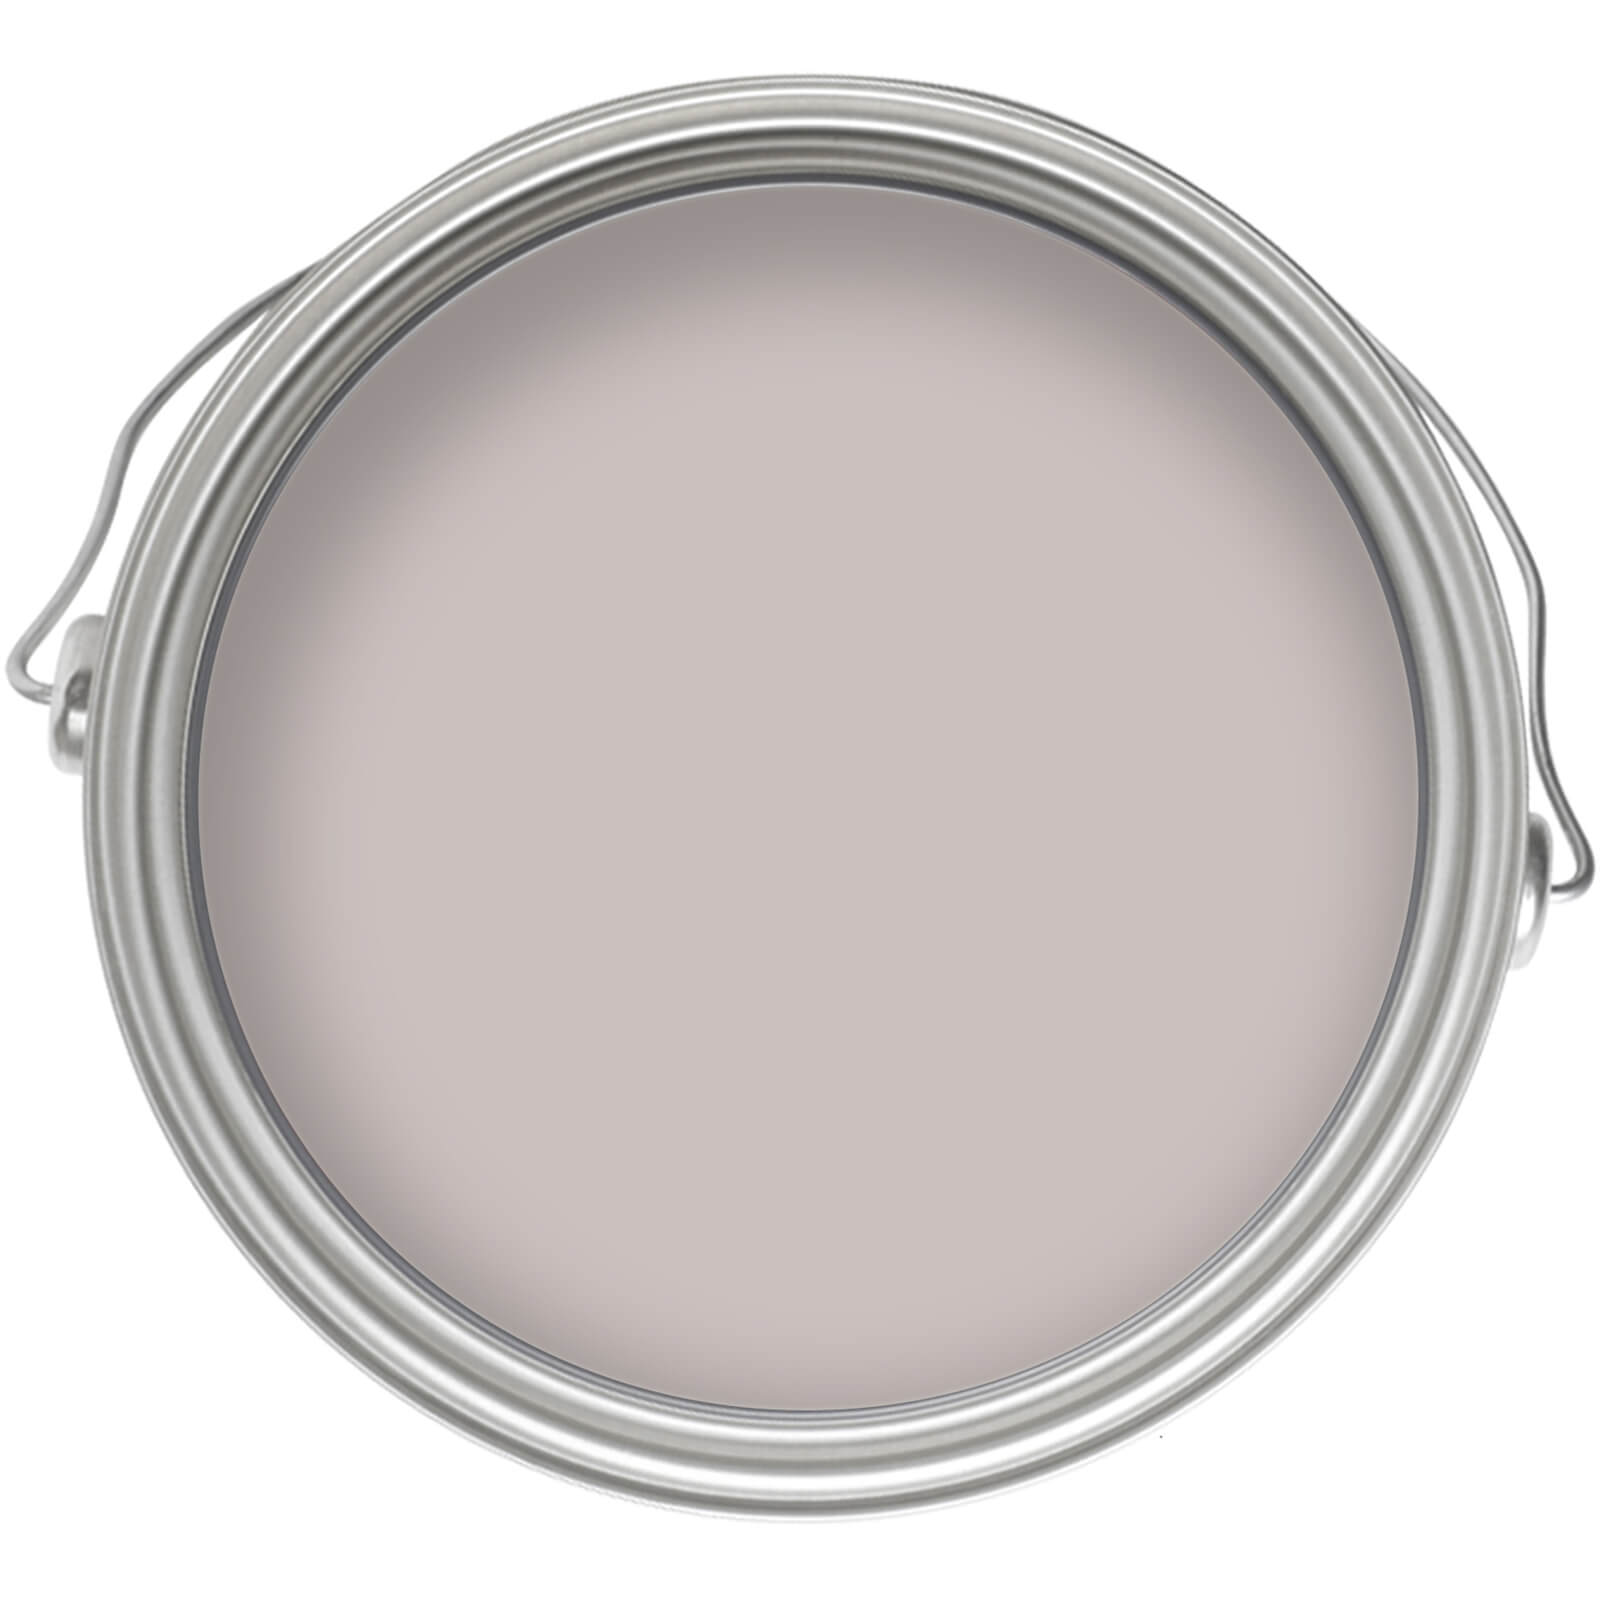 Homebase Matt Emulsion Paint Soft Mink - Tester 90ml